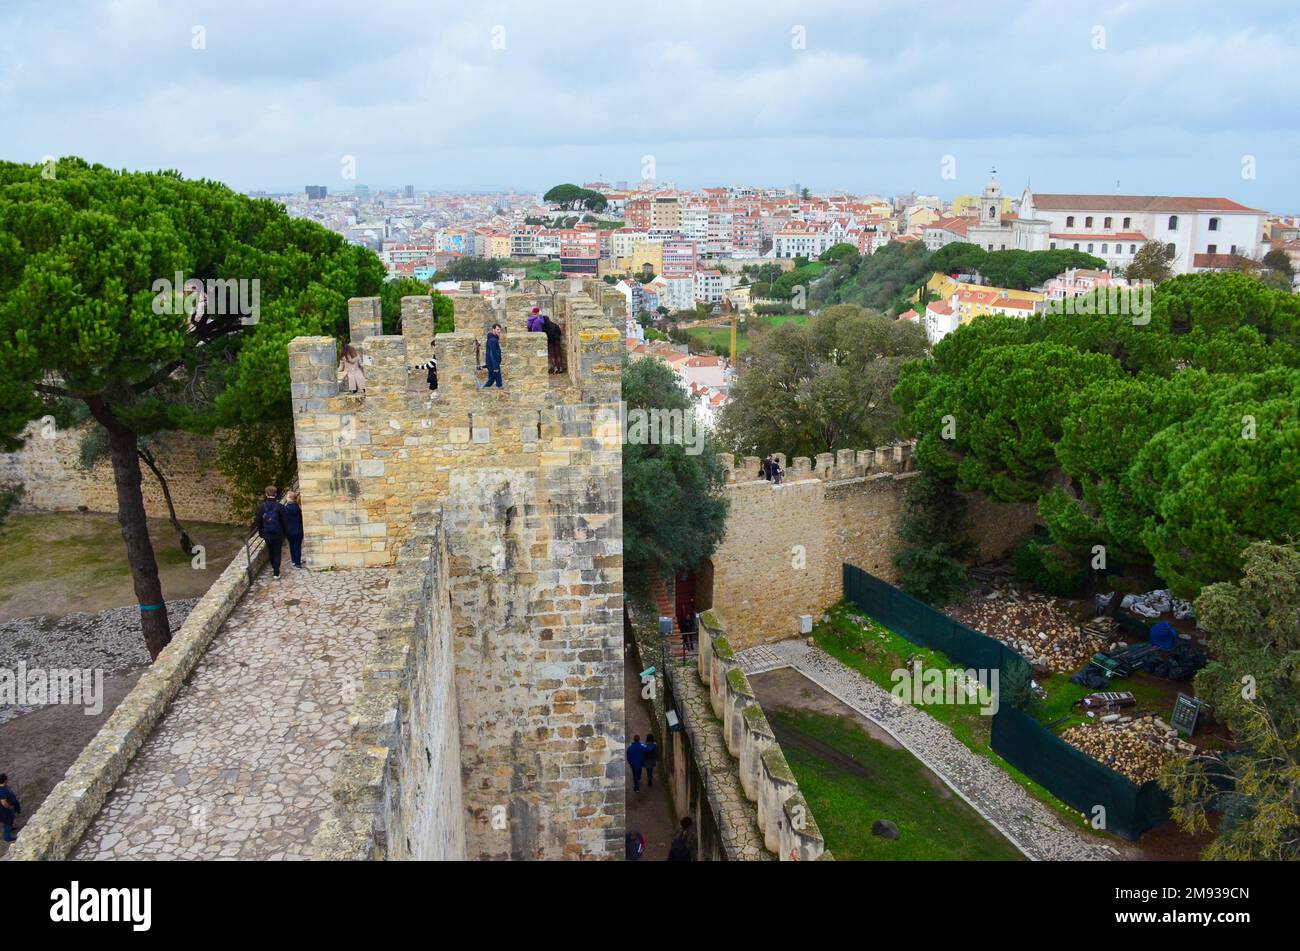 Castelo de S. Jorge. St. George Castle in Lissabon, Portugal. Sie stehen auf dem Schloss mit Blick auf das historische Zentrum von Lissabon. November 2022. Stockfoto